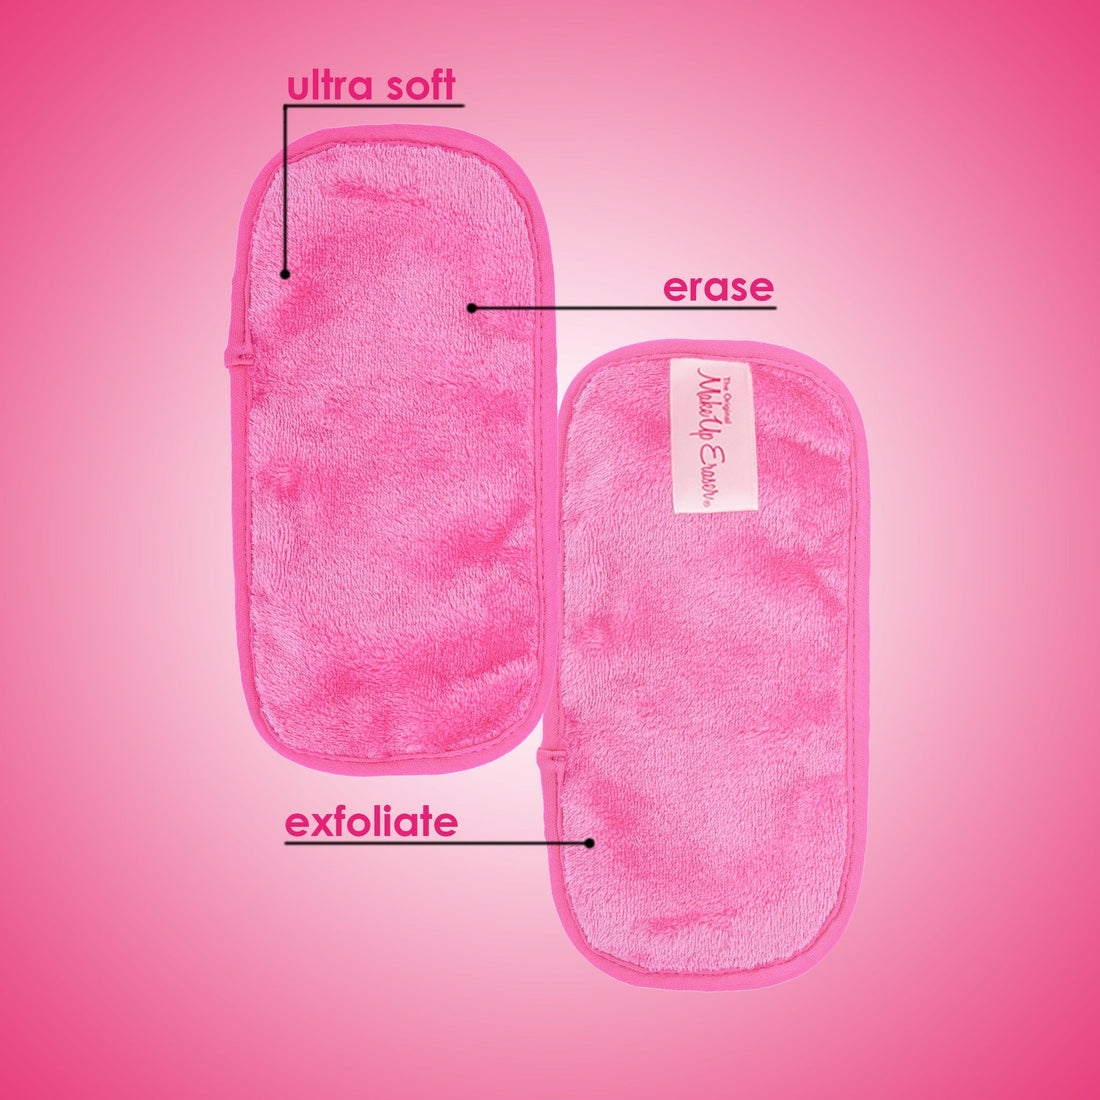 Mini Pink MakeUp Eraser.